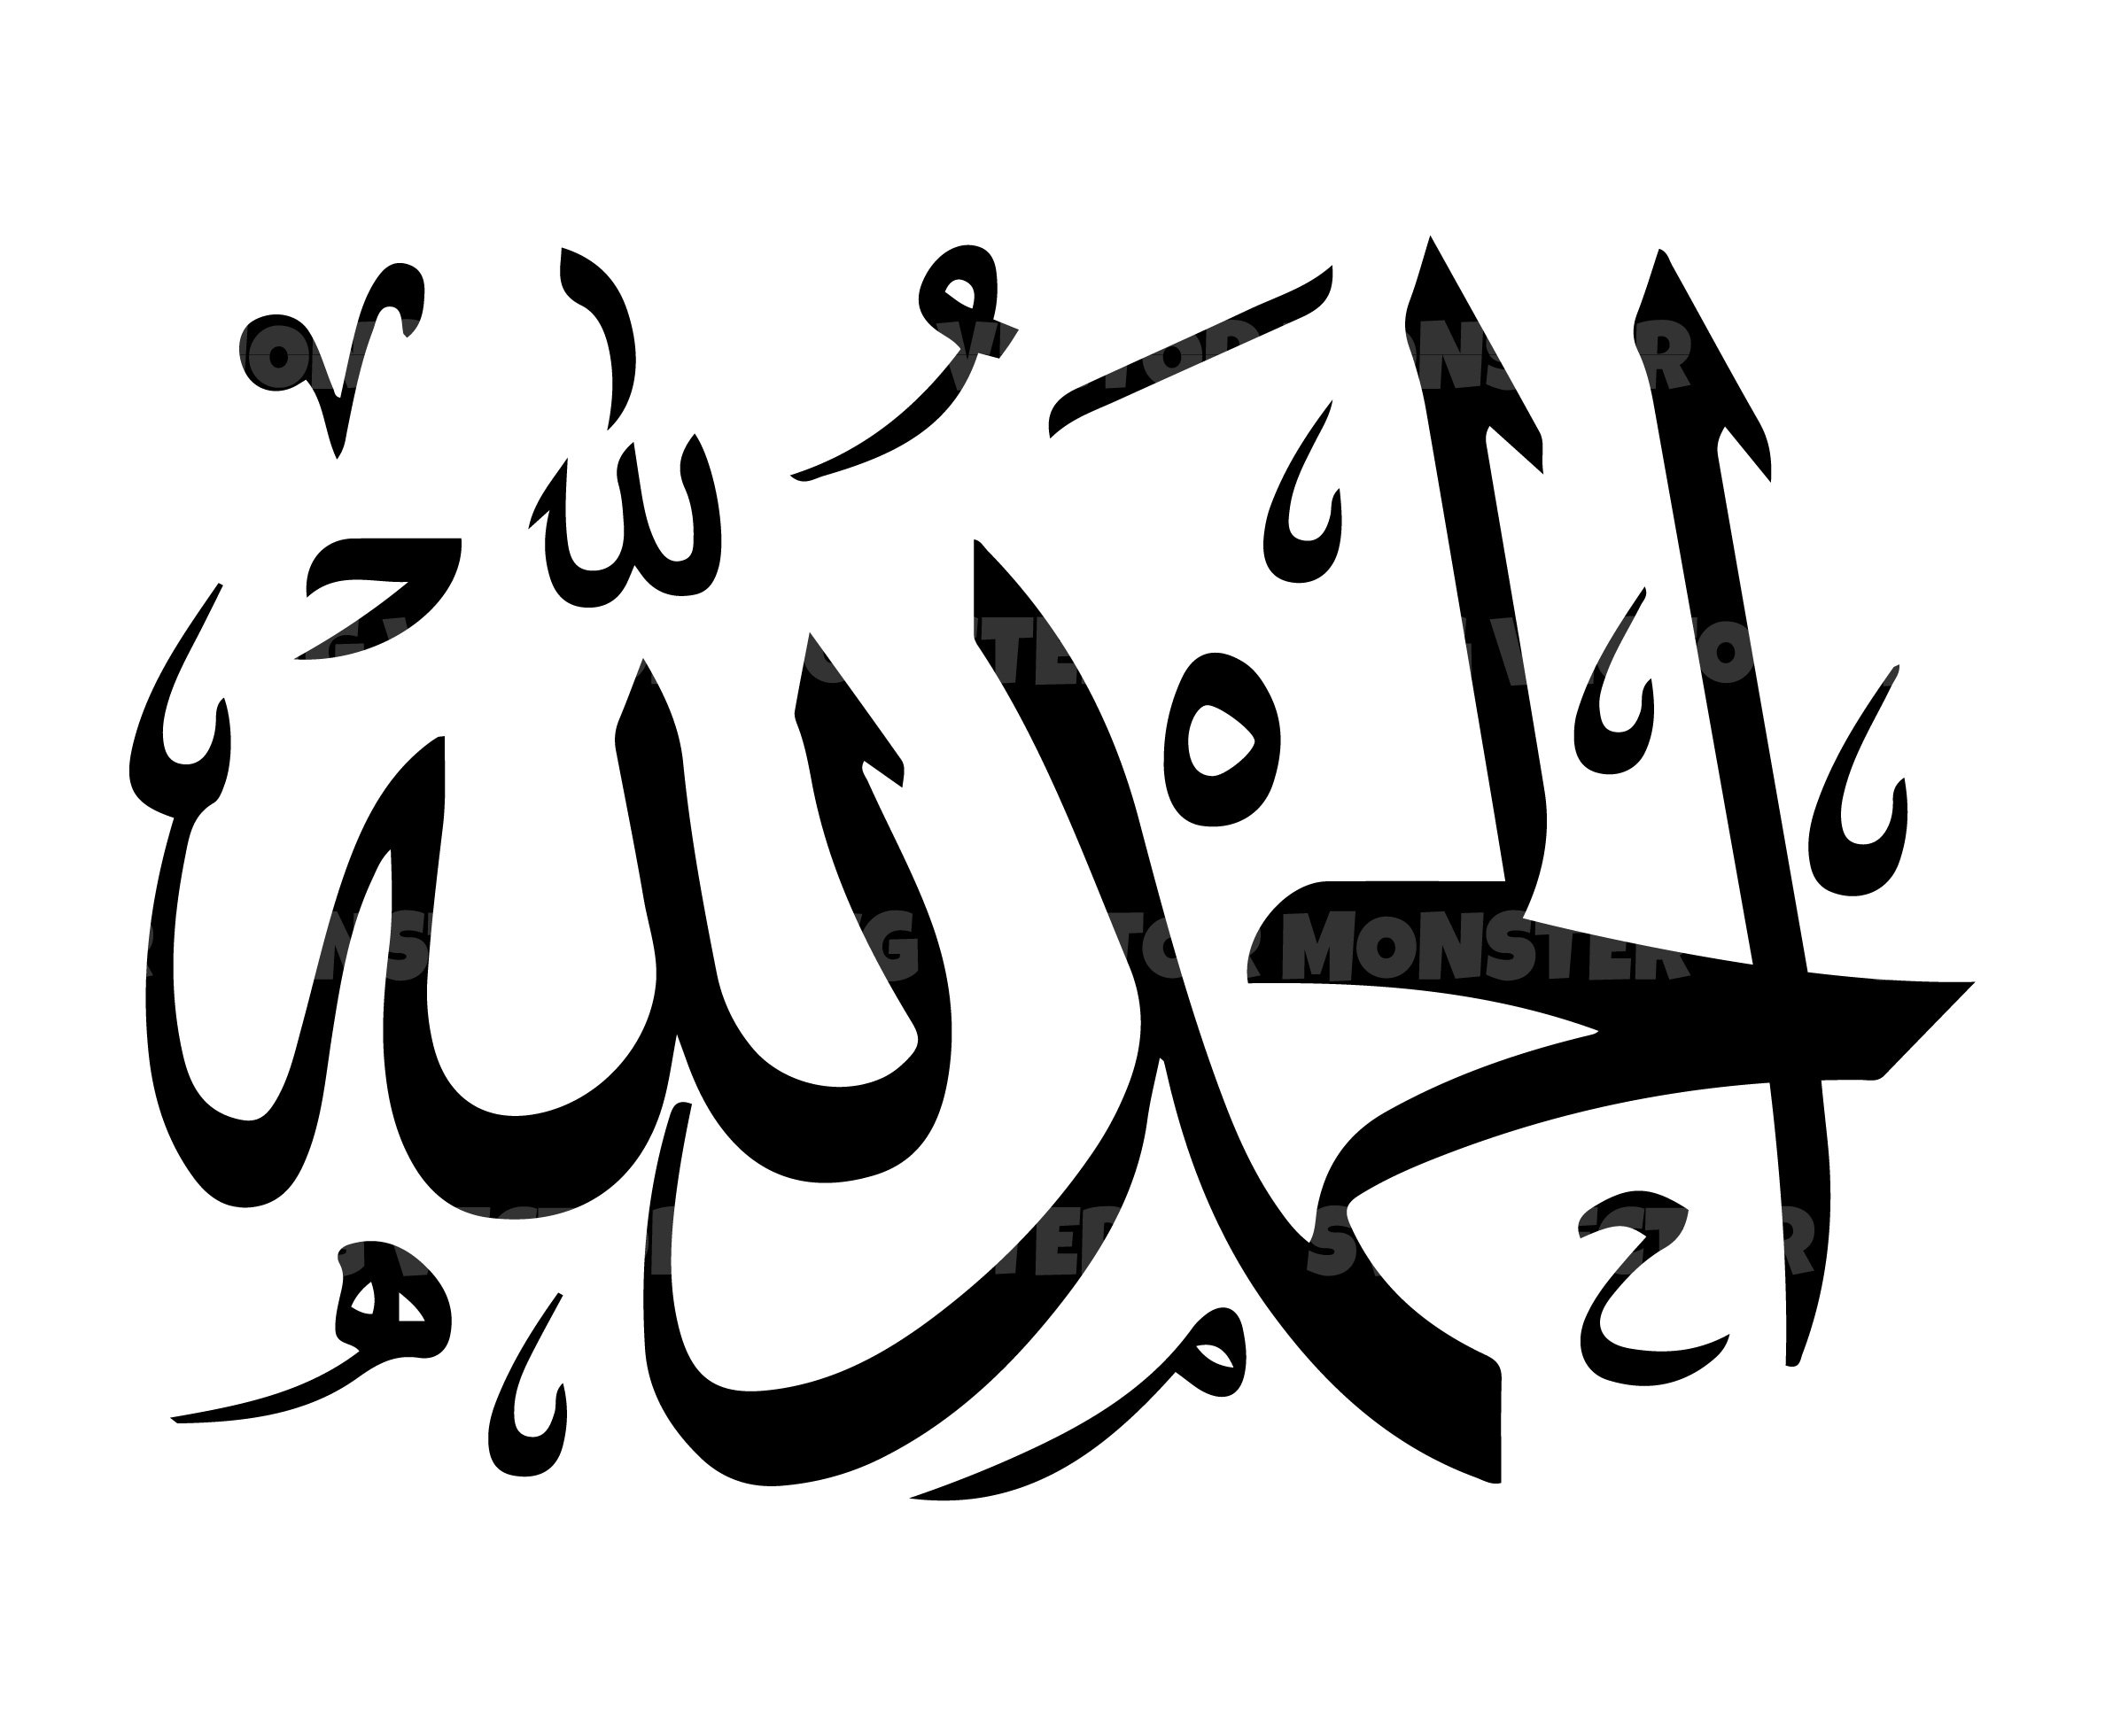 Как пишется альхамдулиллах. АЛЬХАМДУЛИЛЛЯХ. АЛЬХАМДУЛИЛЛЯХ на арабском. Красивые надписи на арабском.